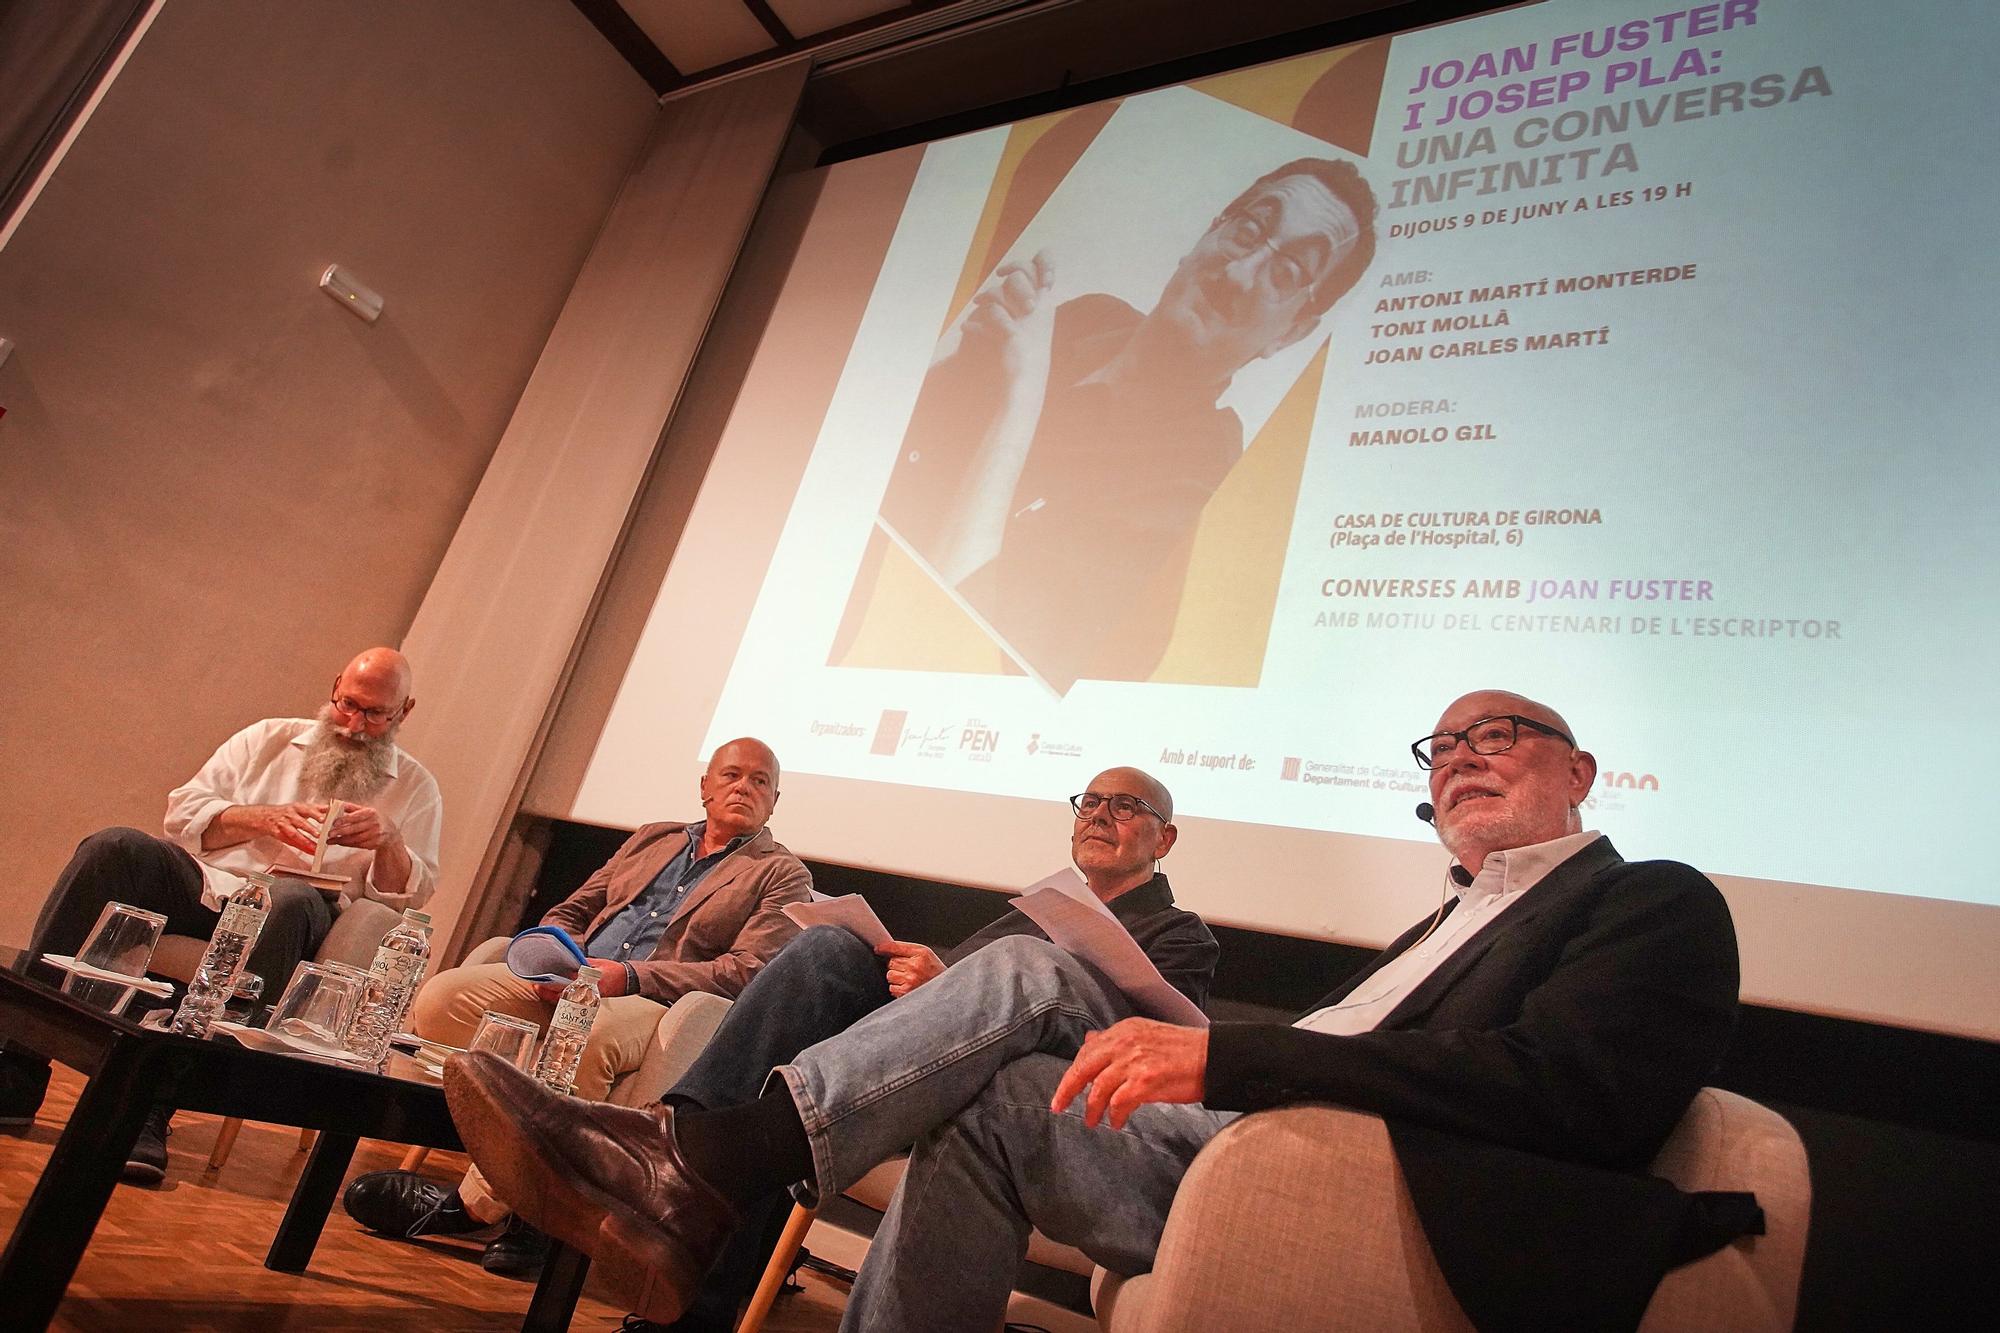 La Casa de Cultura acull la «conversa infinita» entre Joan Fuster i Josep Pla